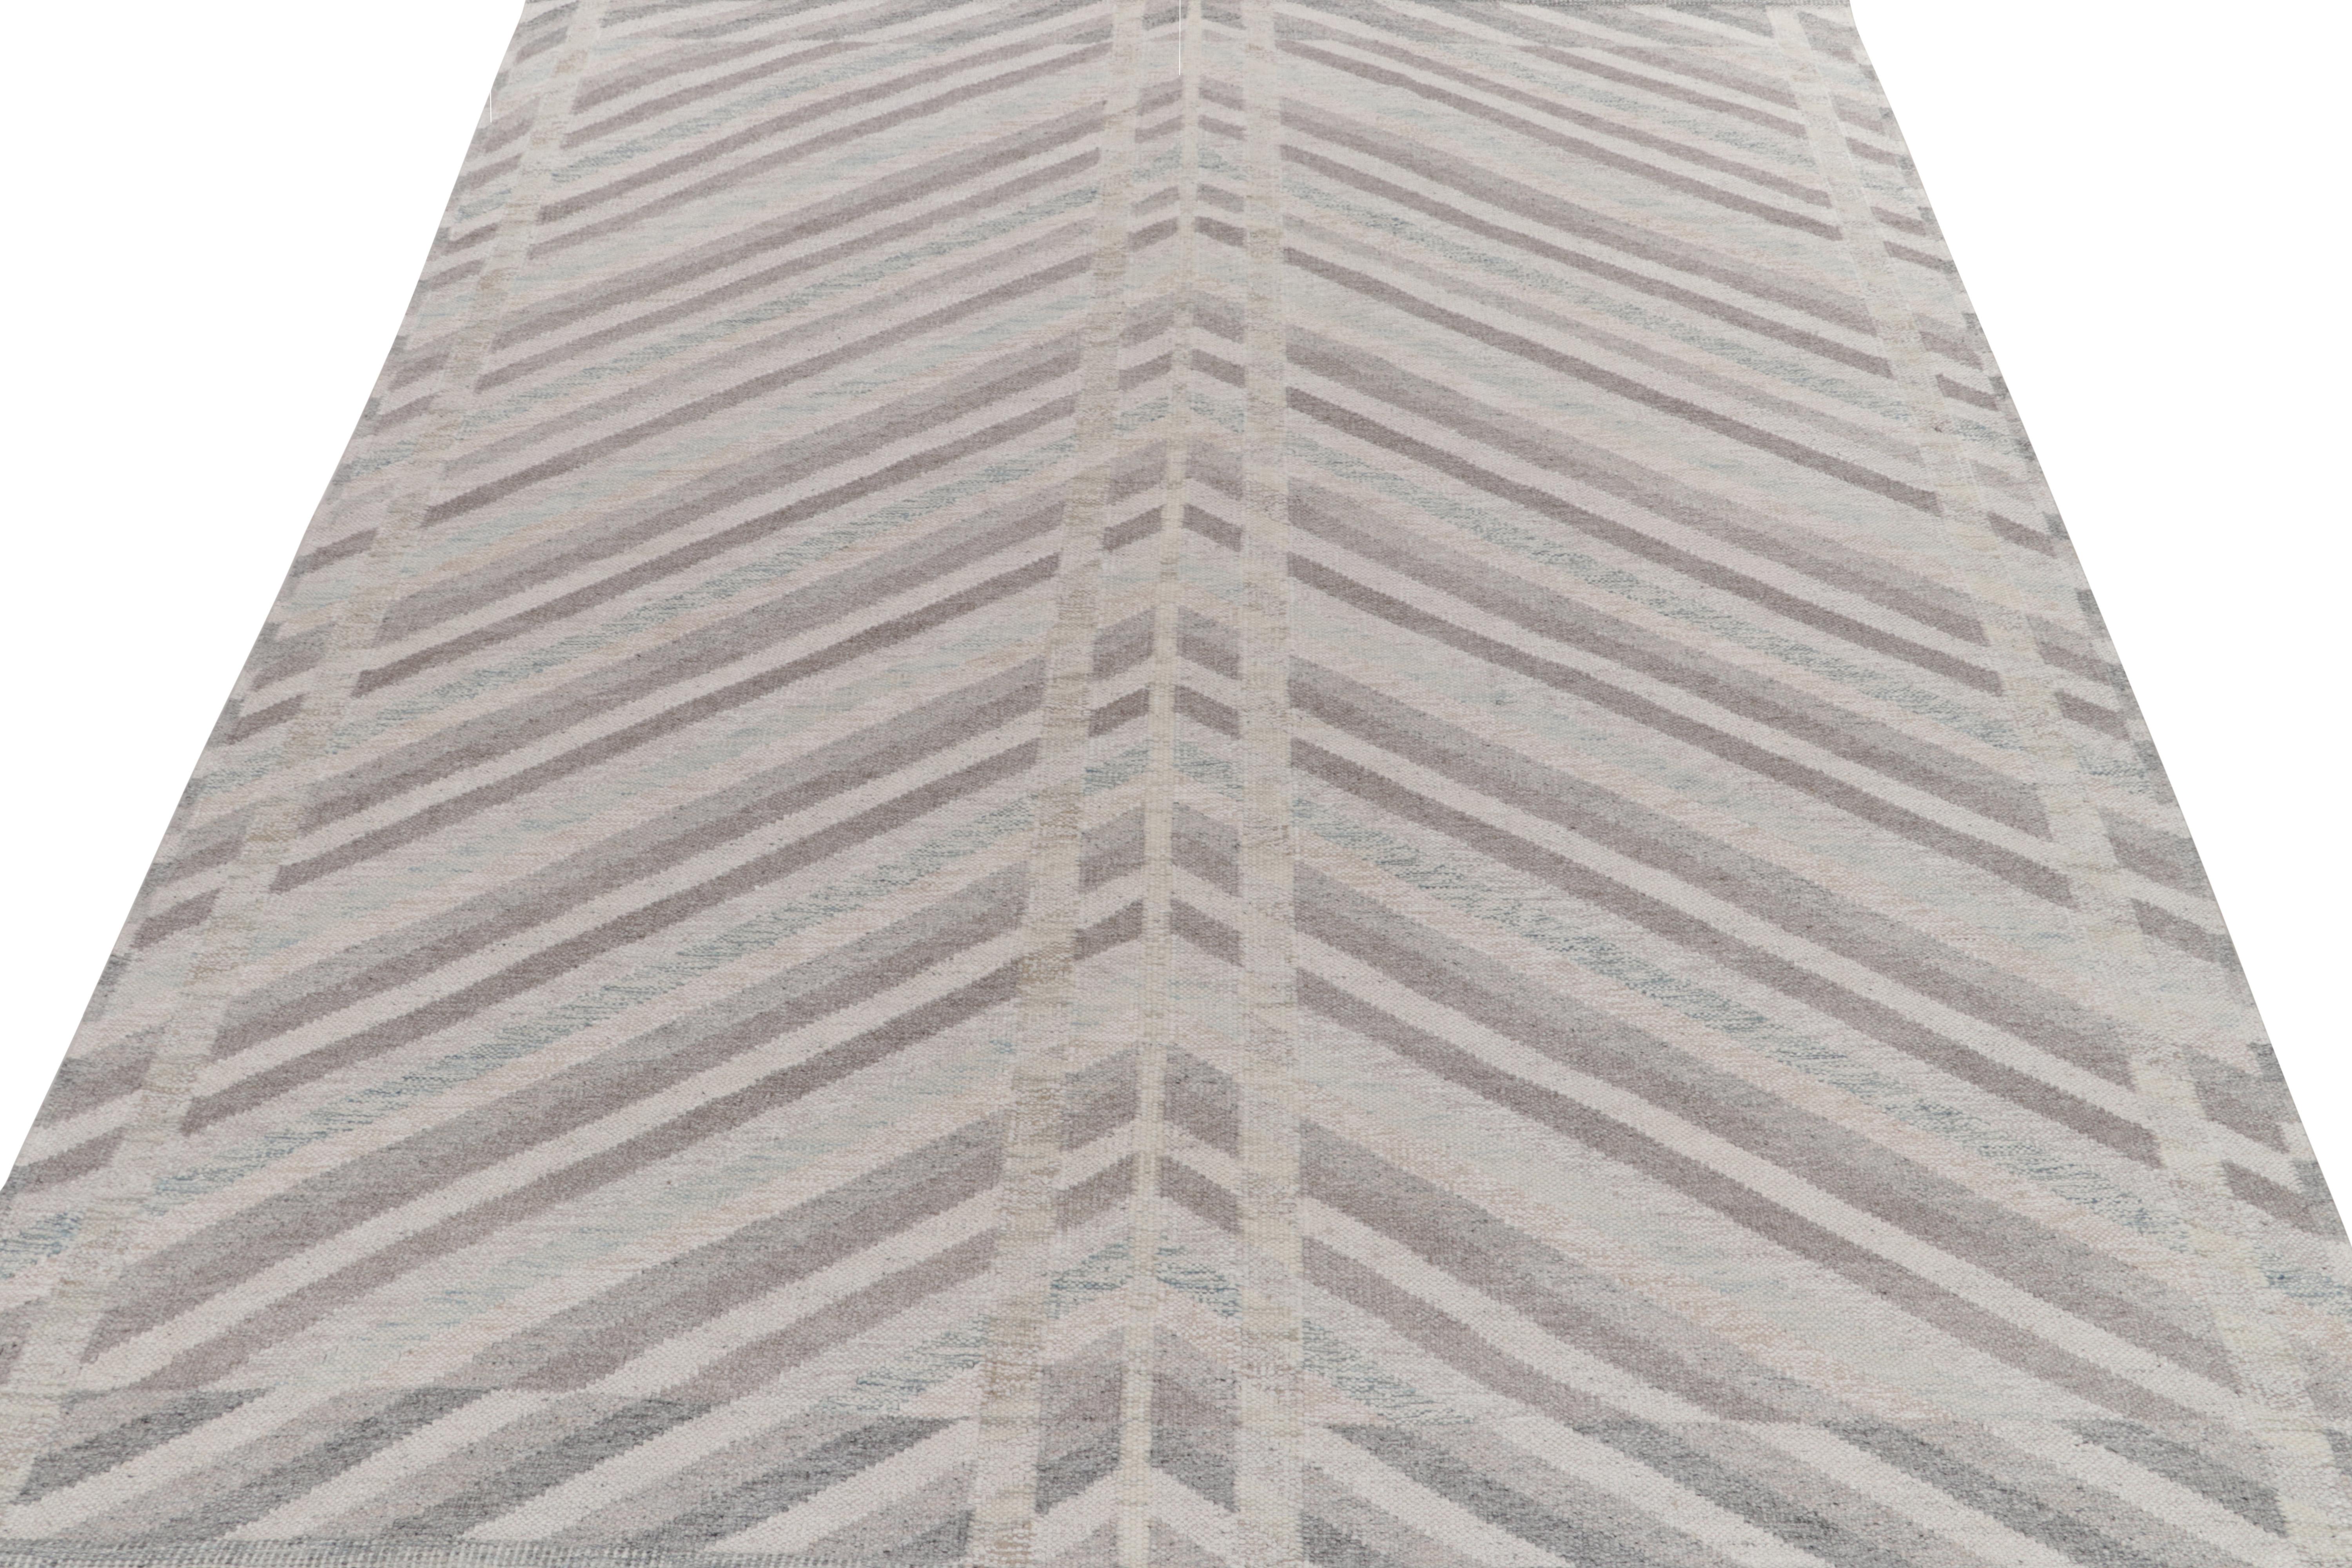 Parmi nos sélections de tissage plat primées, un tapis kilim 10x12 de style scandinave illustrant les principes de mouvement et de symétrie sublimes. Tissé à la main en laine, les stries nettes se transforment en chevrons qui s'épanouissent sur